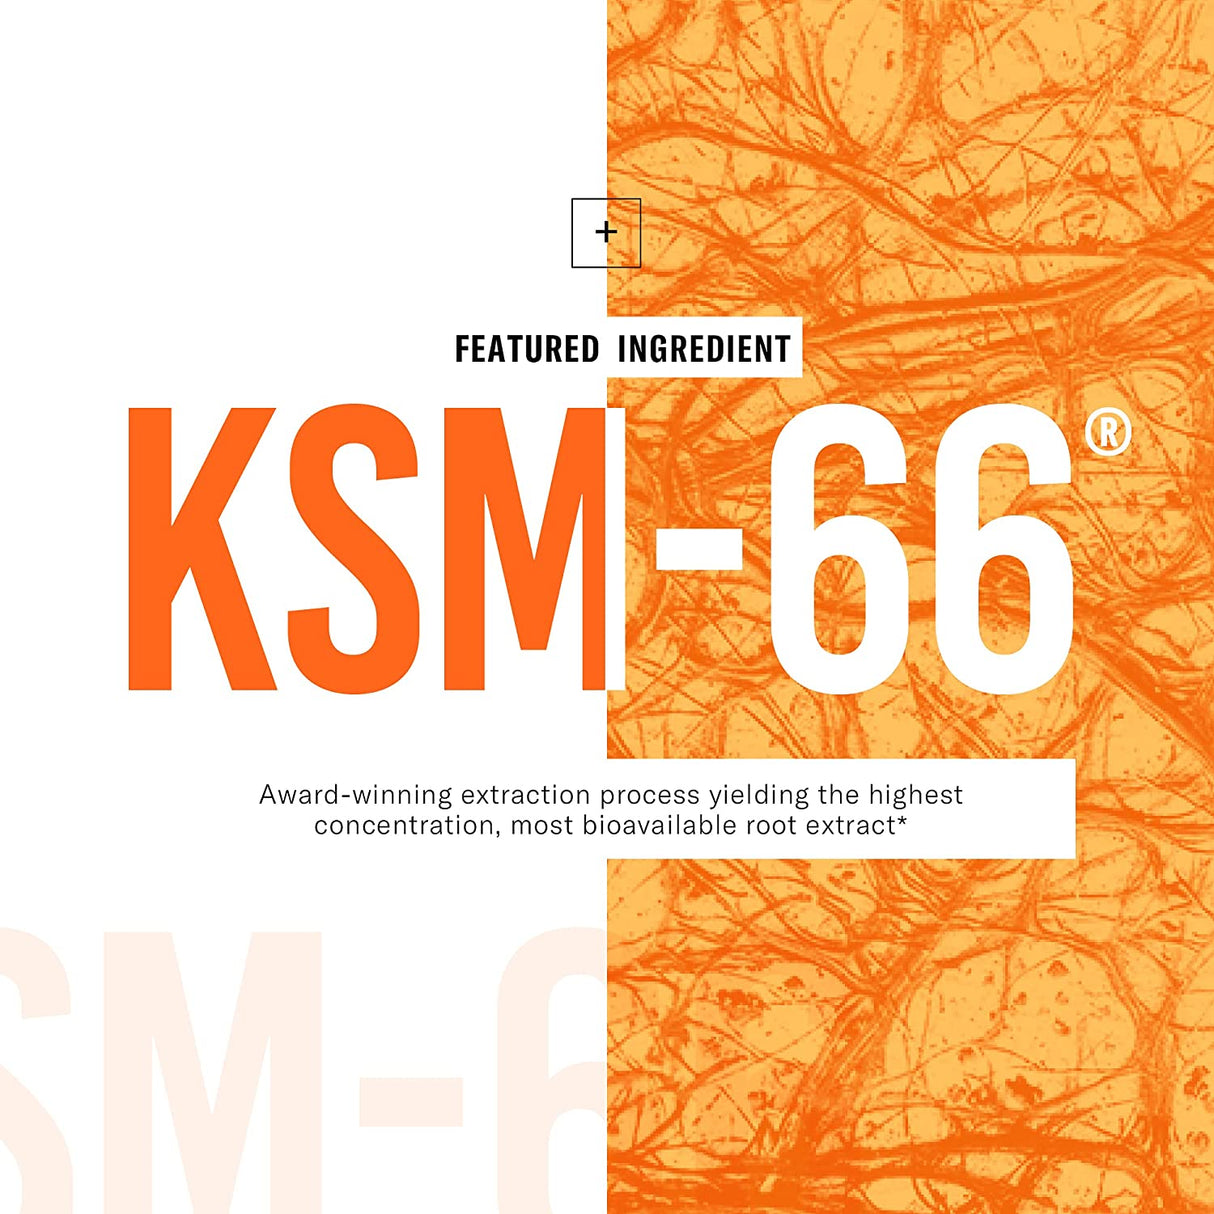 Physician´s Choice KSM-66 Ashwagandha Root Powder Extract 1000Mg. 60 Capsulas